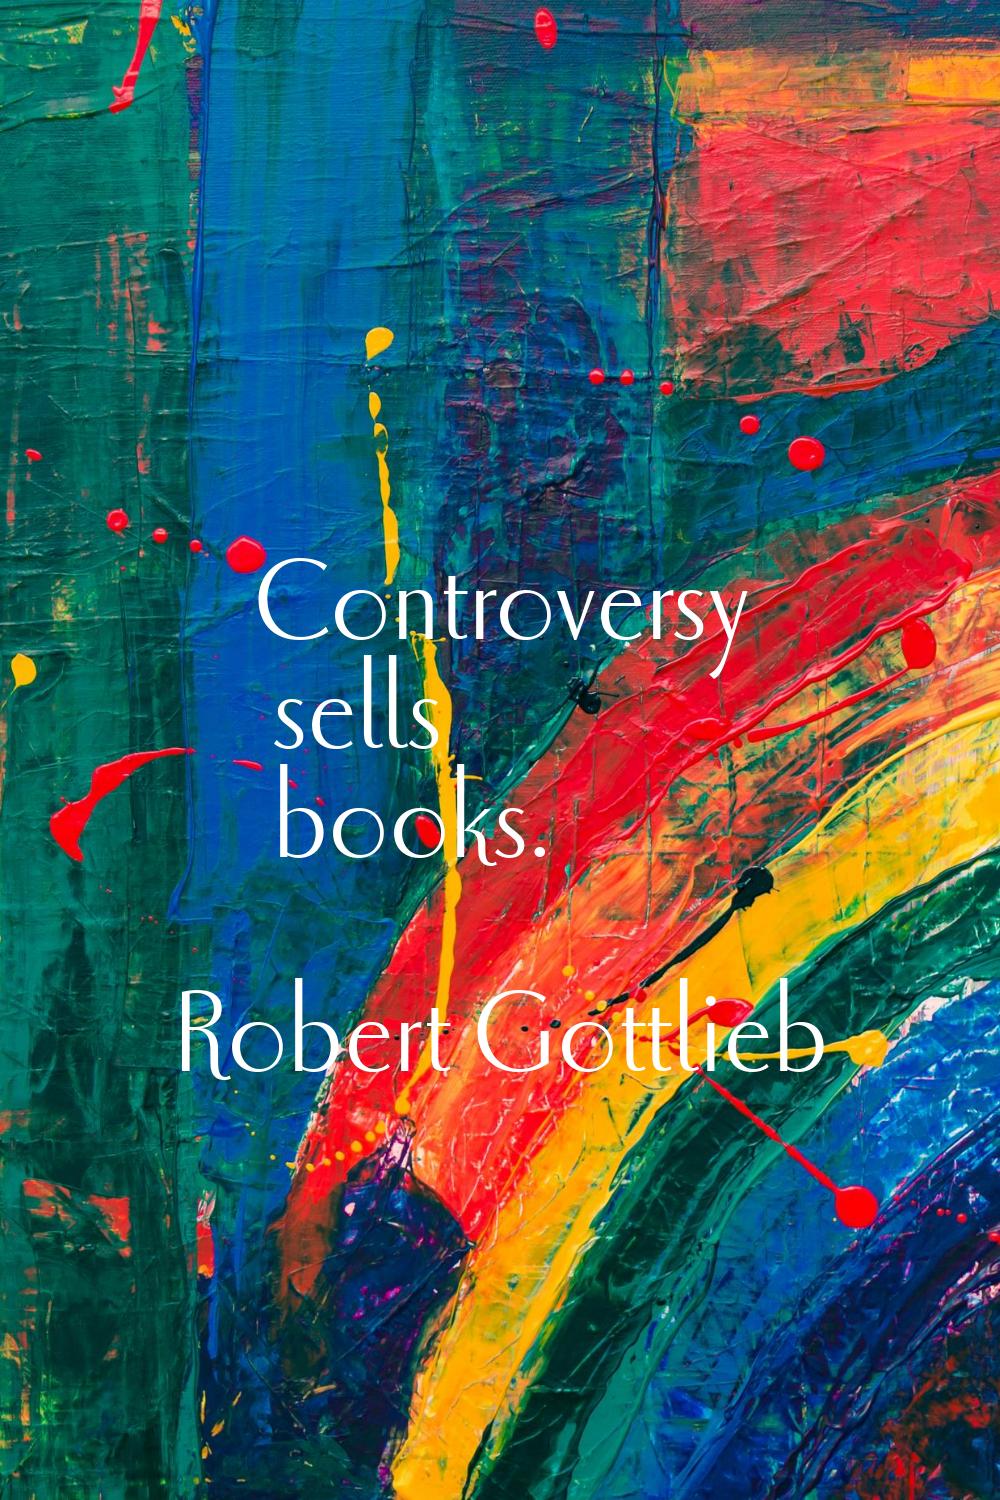 Controversy sells books.